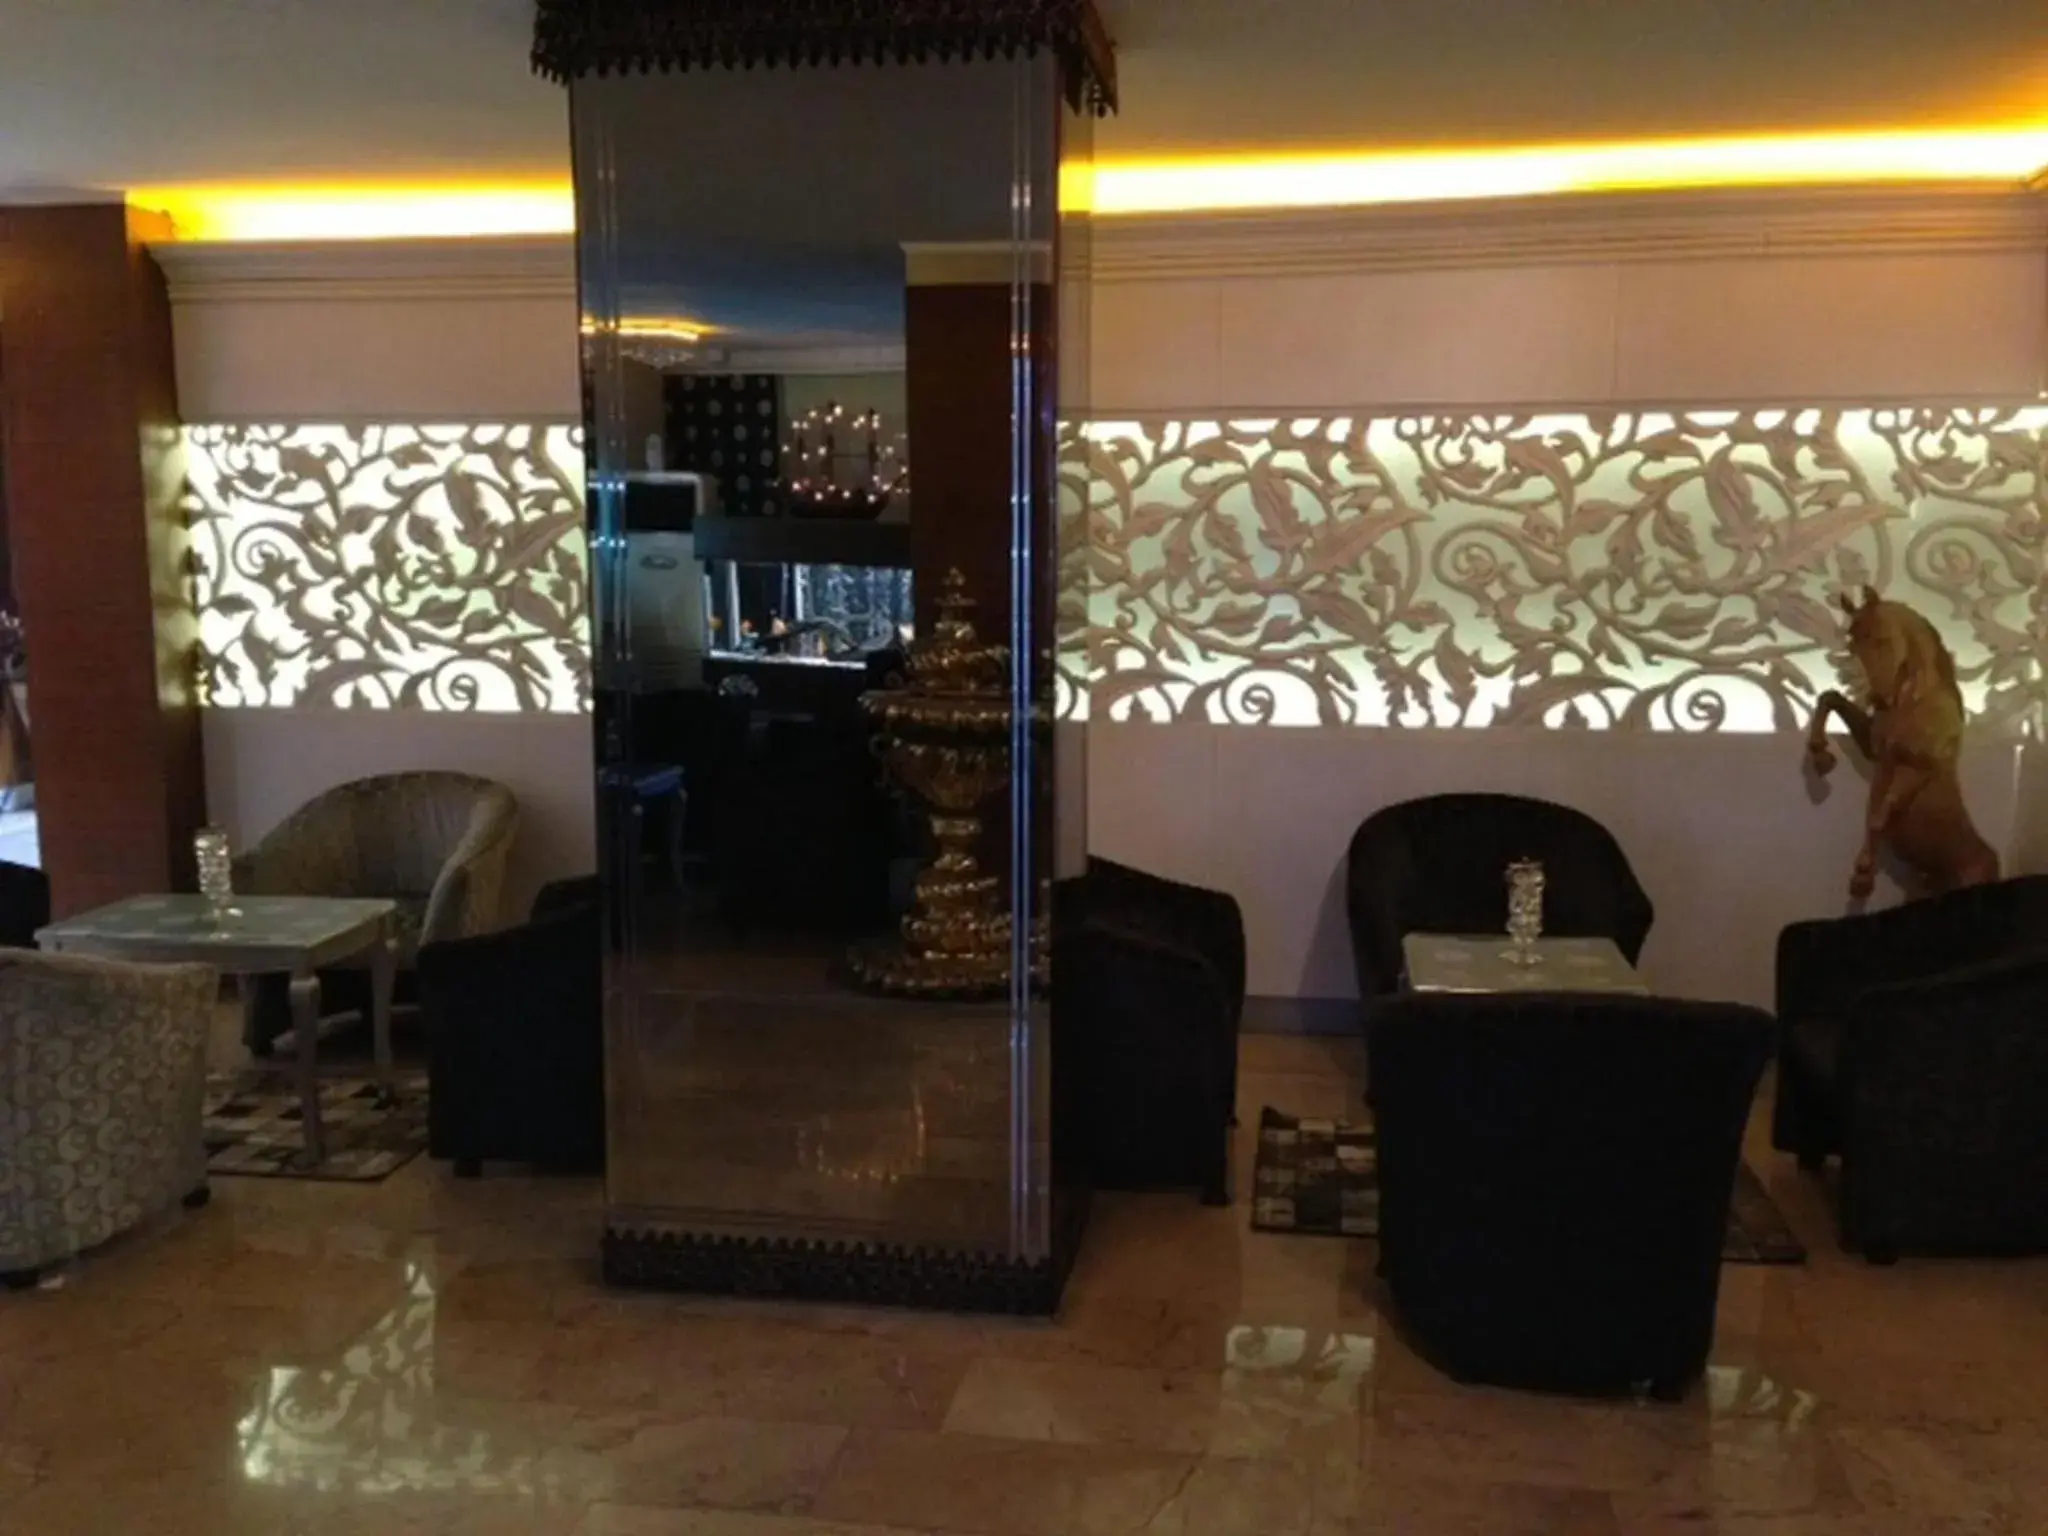 Lounge or bar, Lobby/Reception in Maya Hotel